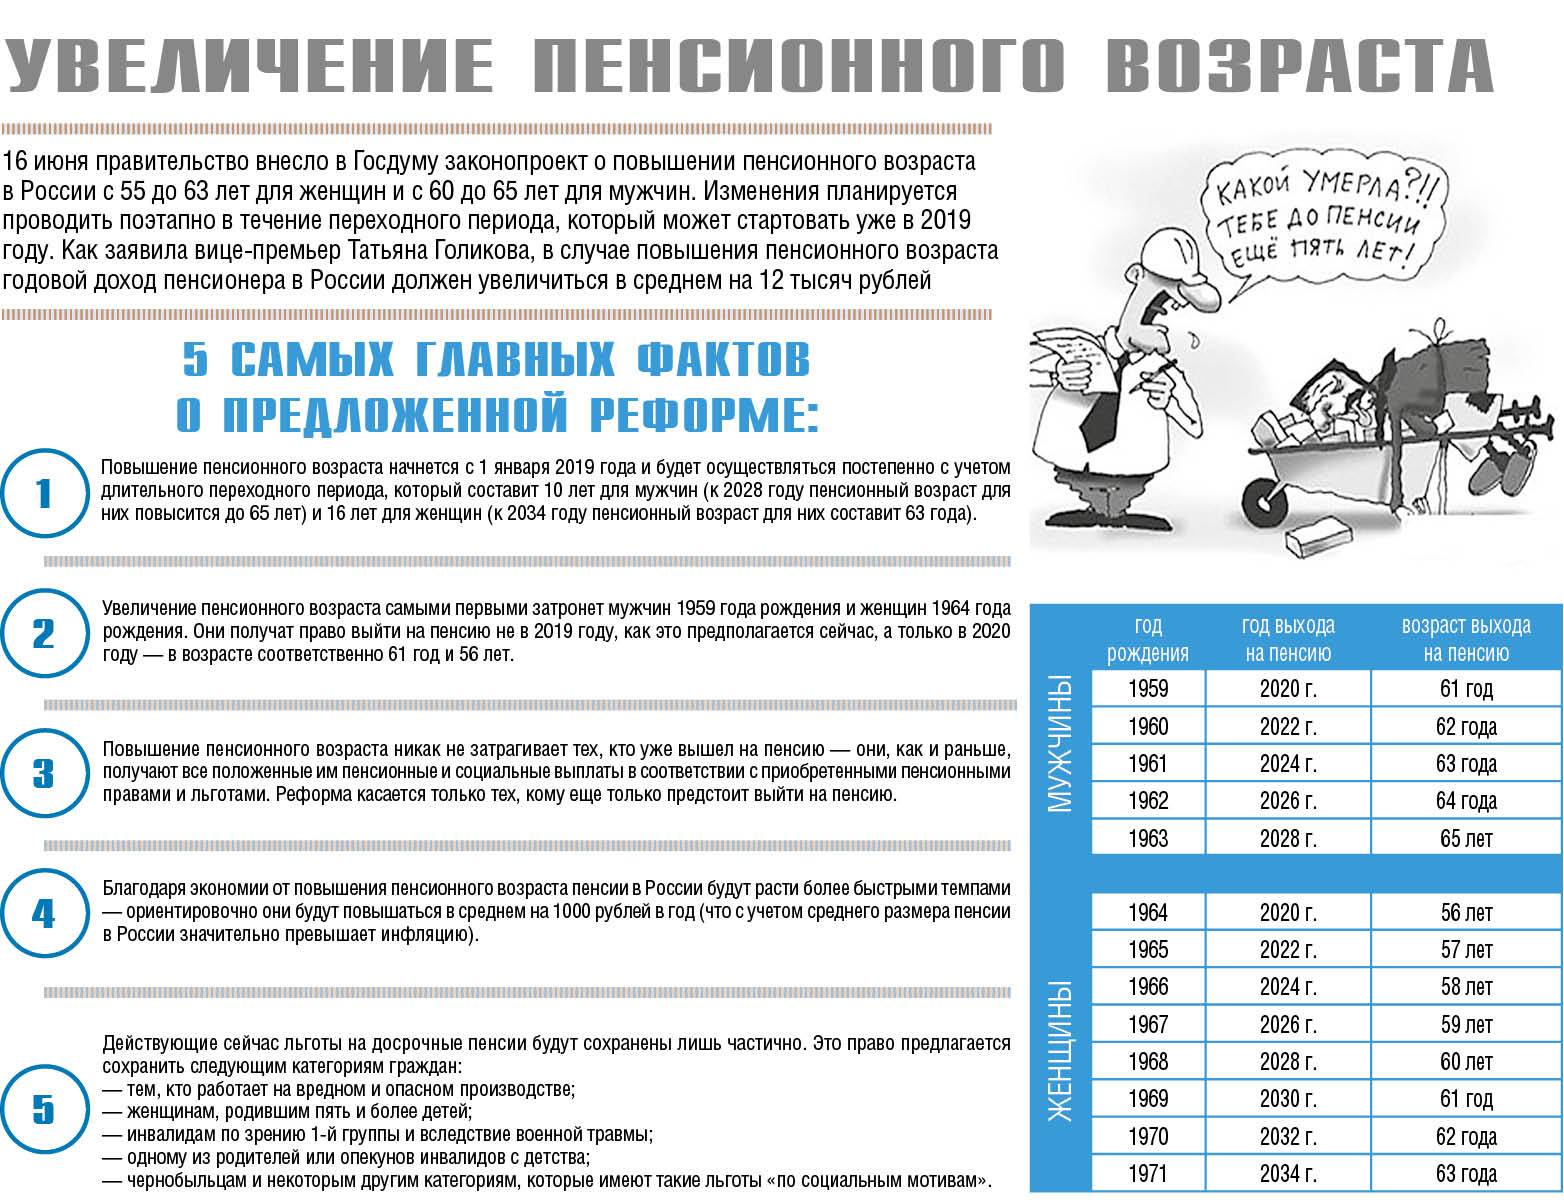 Вернут ли пенсионный возраст в россии 55 и 60 лет в 2022 году: последние новости